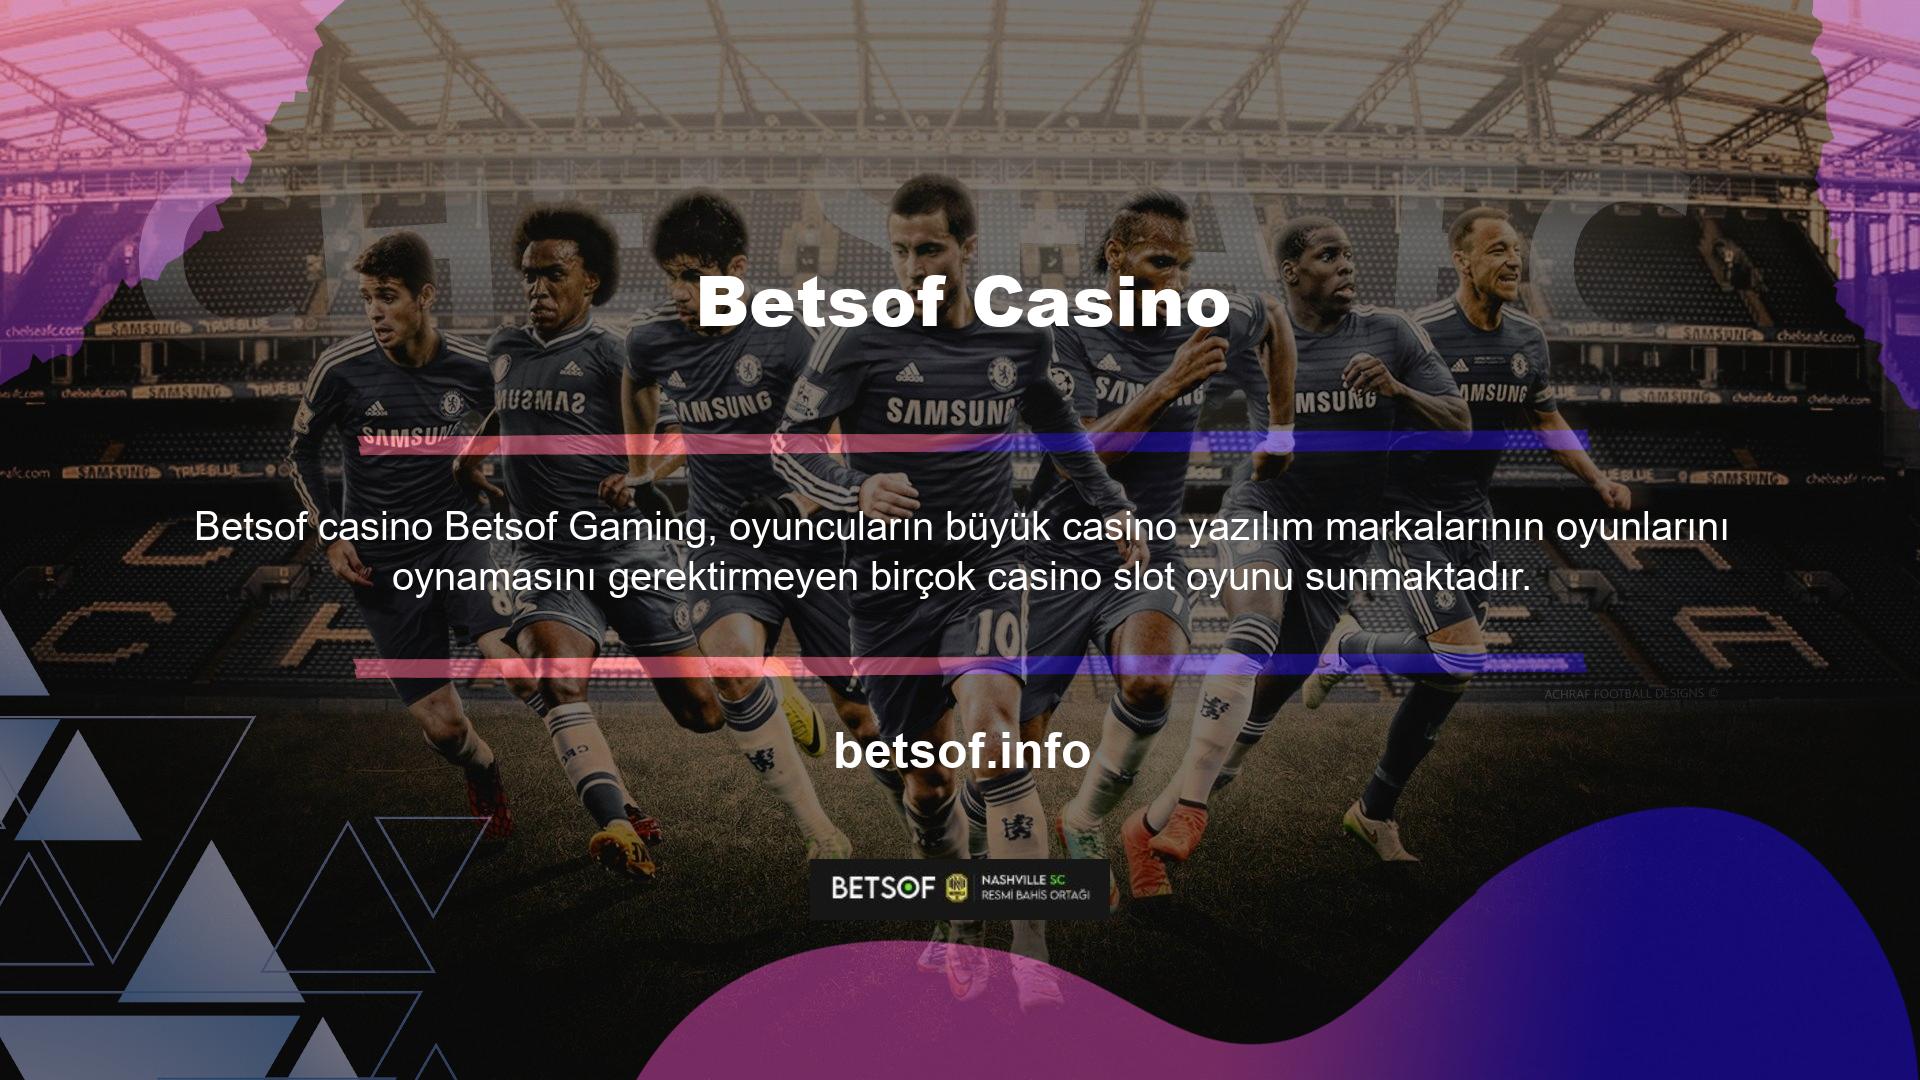 Ayrıca web sitemize ve mobil arayüzümüze oyun arama özelliği ekleyerek oyuncuların aradıkları casino oyunlarını bulmalarını kolaylaştırdık